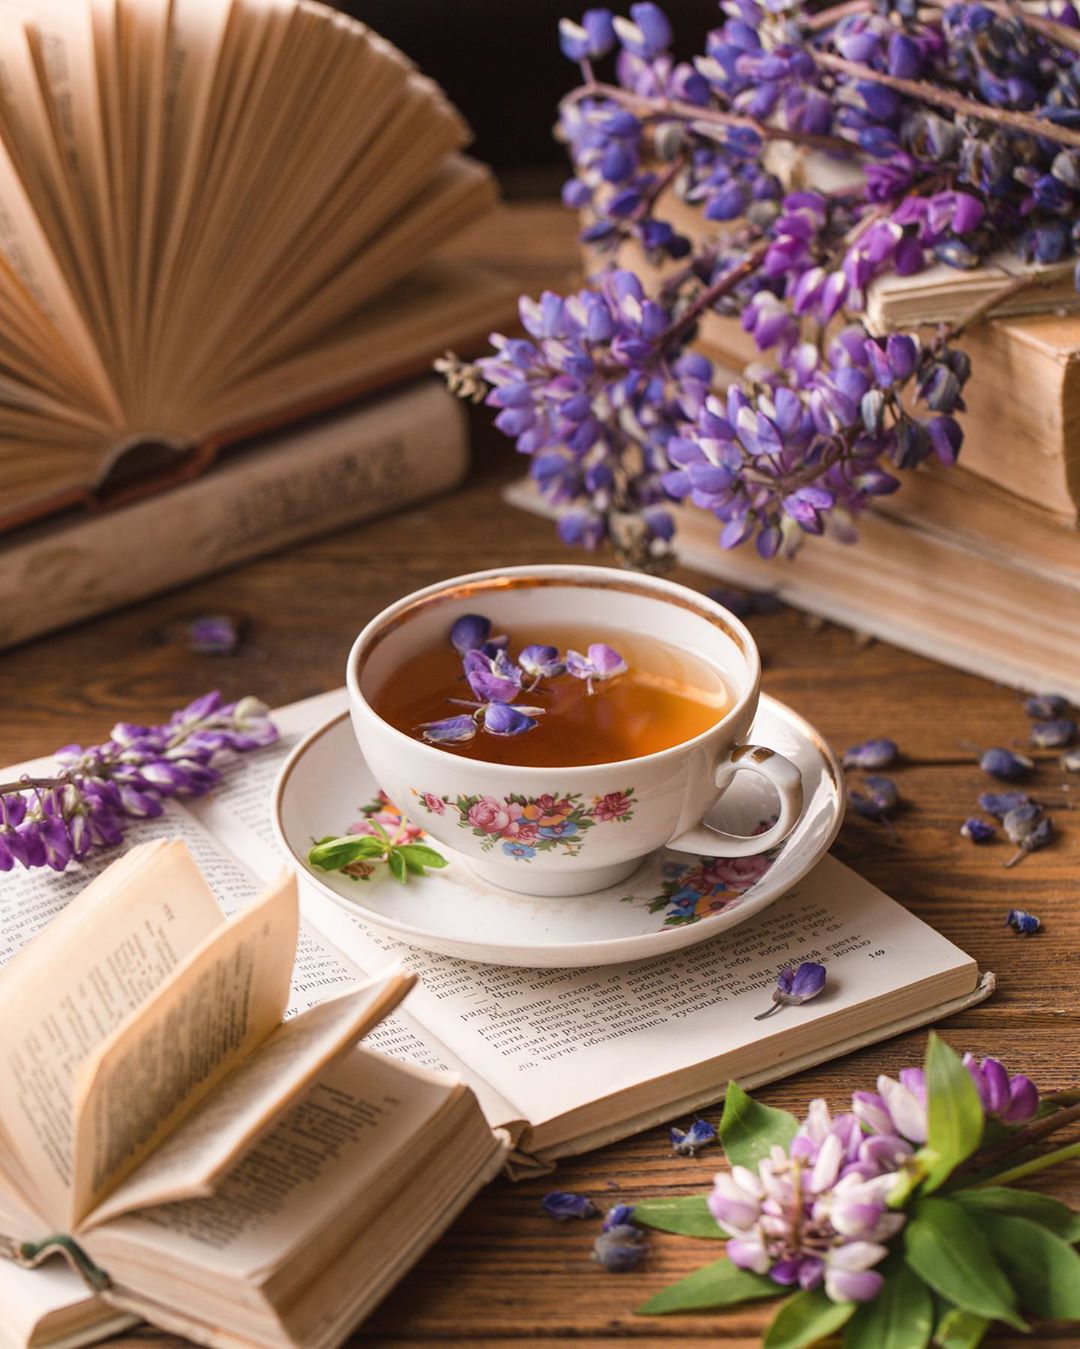 Фото Чашка с чаем на блюдце стоит на открытой книге и рядом цветы глицинии